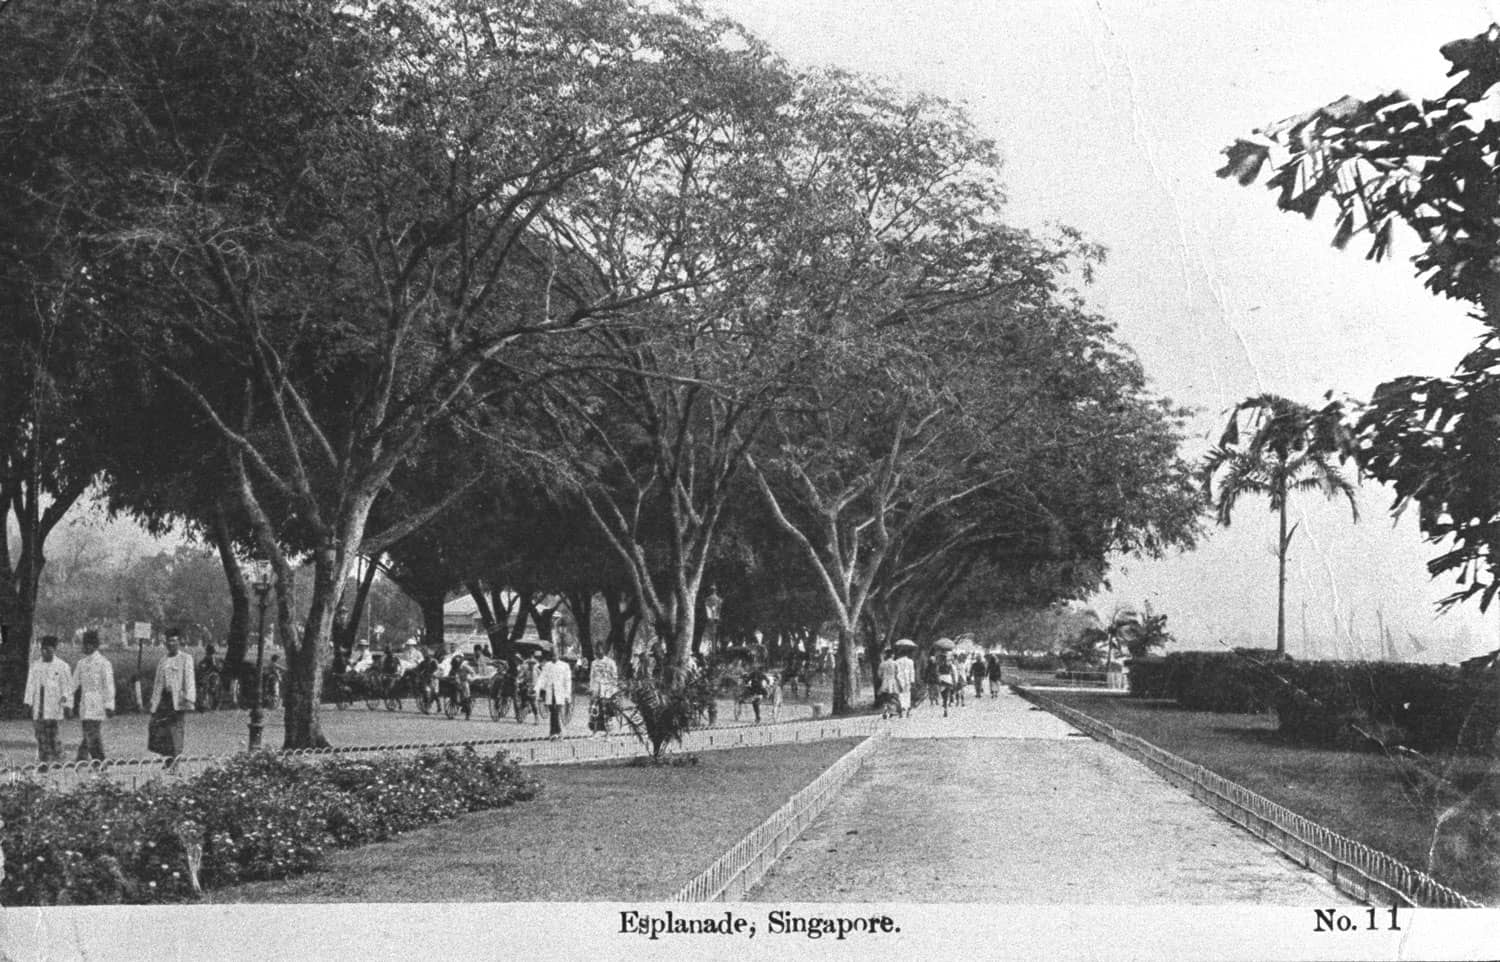 The Esplanade, 1920s